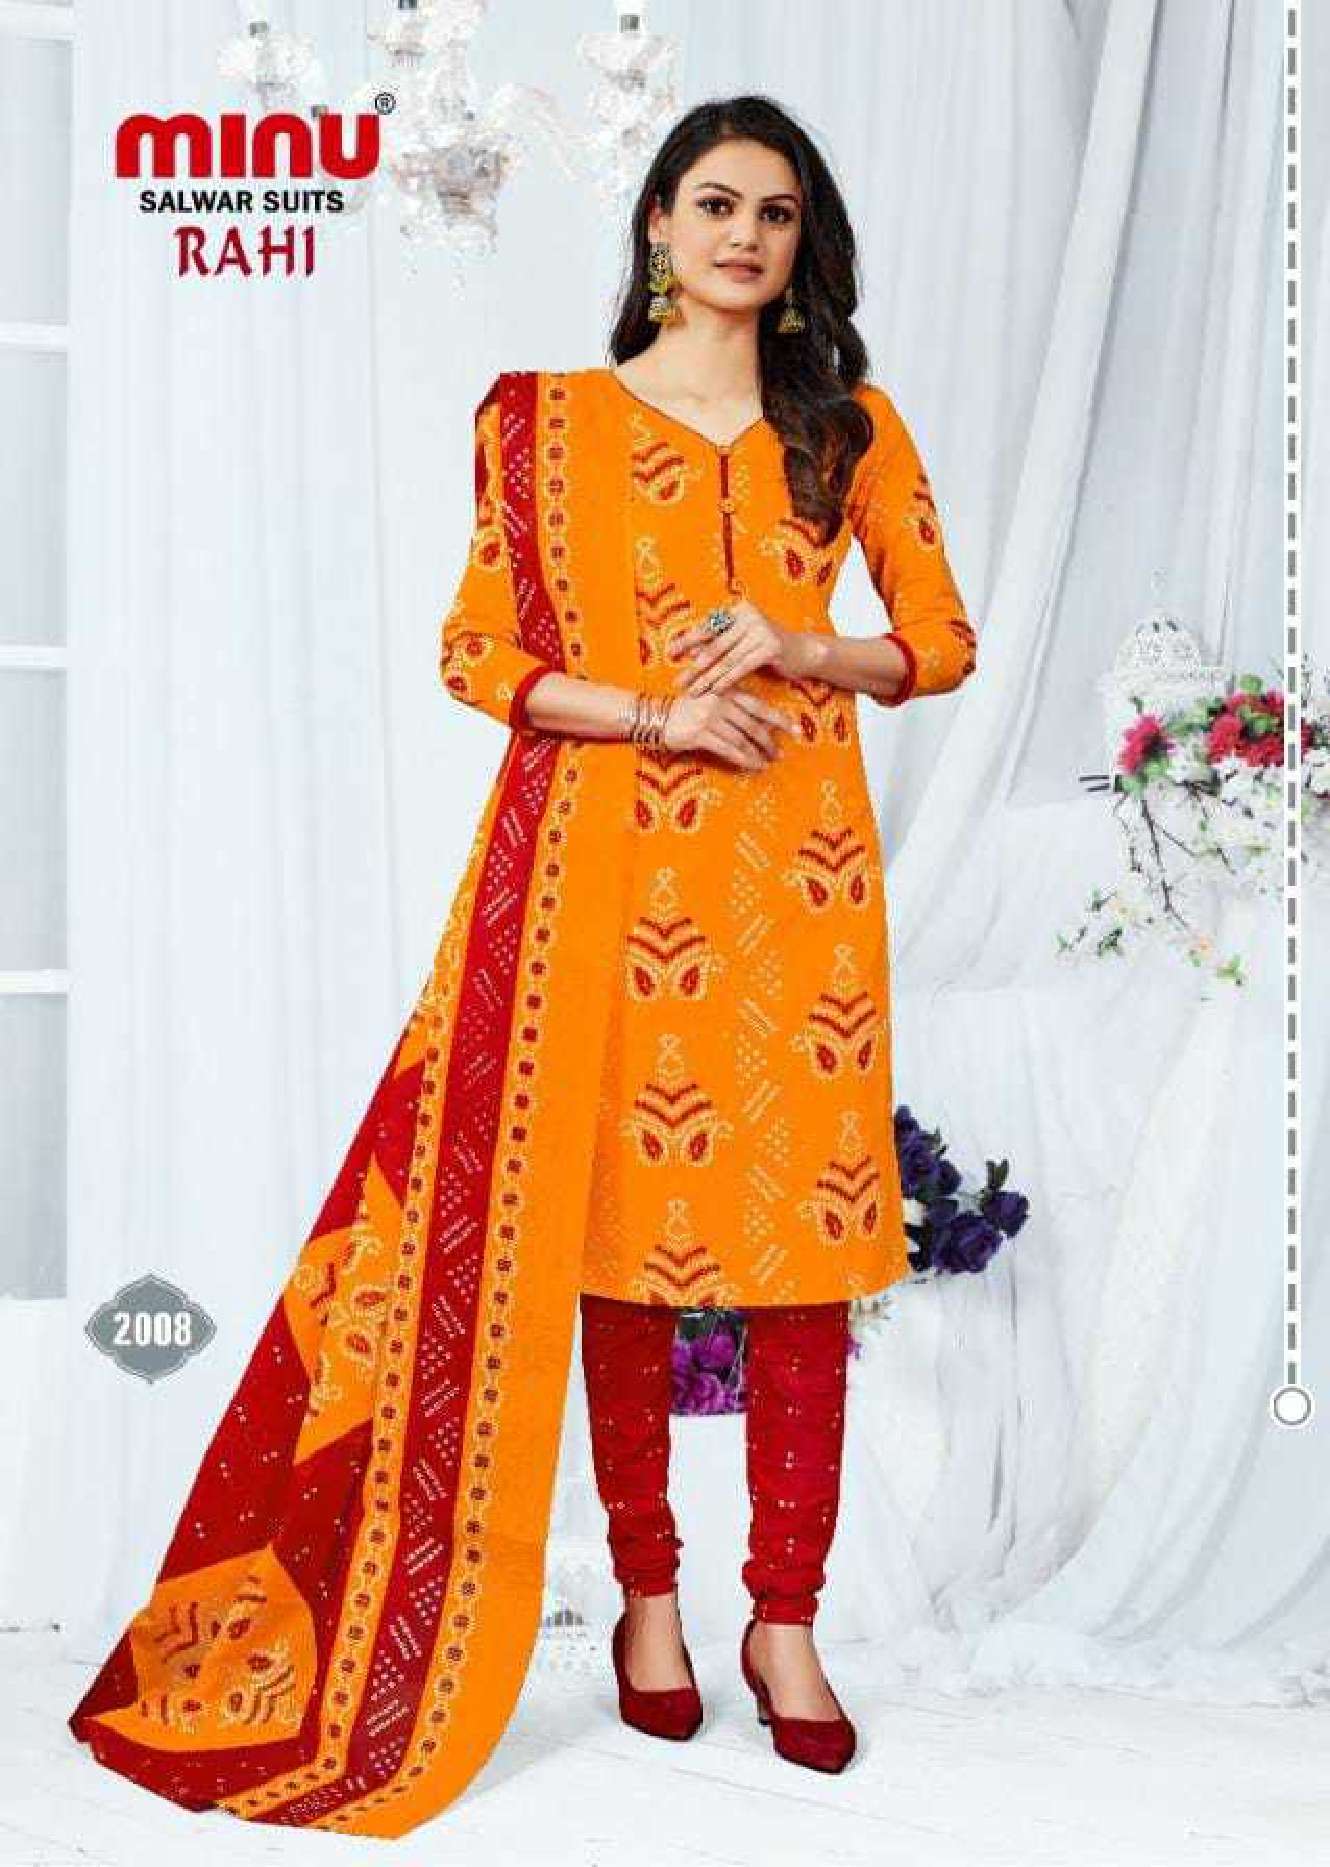 Minu Rahi Bandhni Cotton Dress Material-8P Catalogue